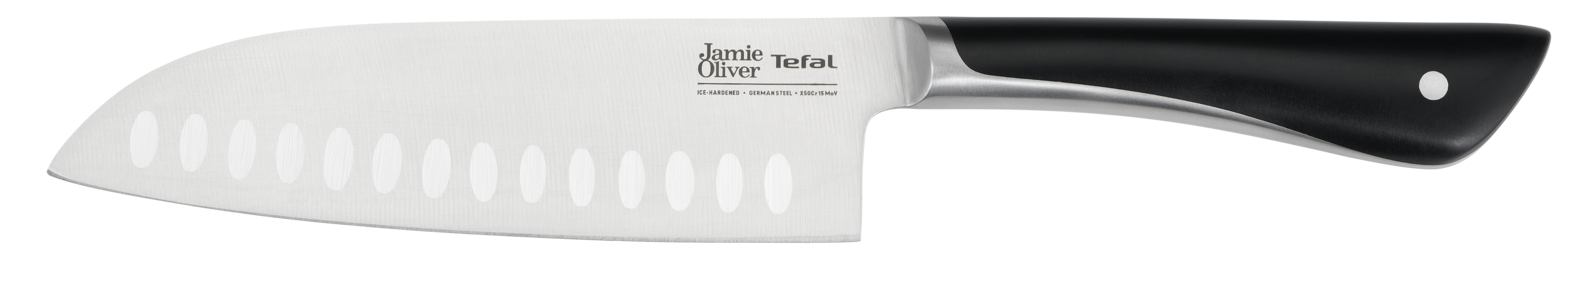 Нож сантоку Jamie Oliver K2671556 16.5 см нож сантоку jamie oliver k2671556 16 5 см